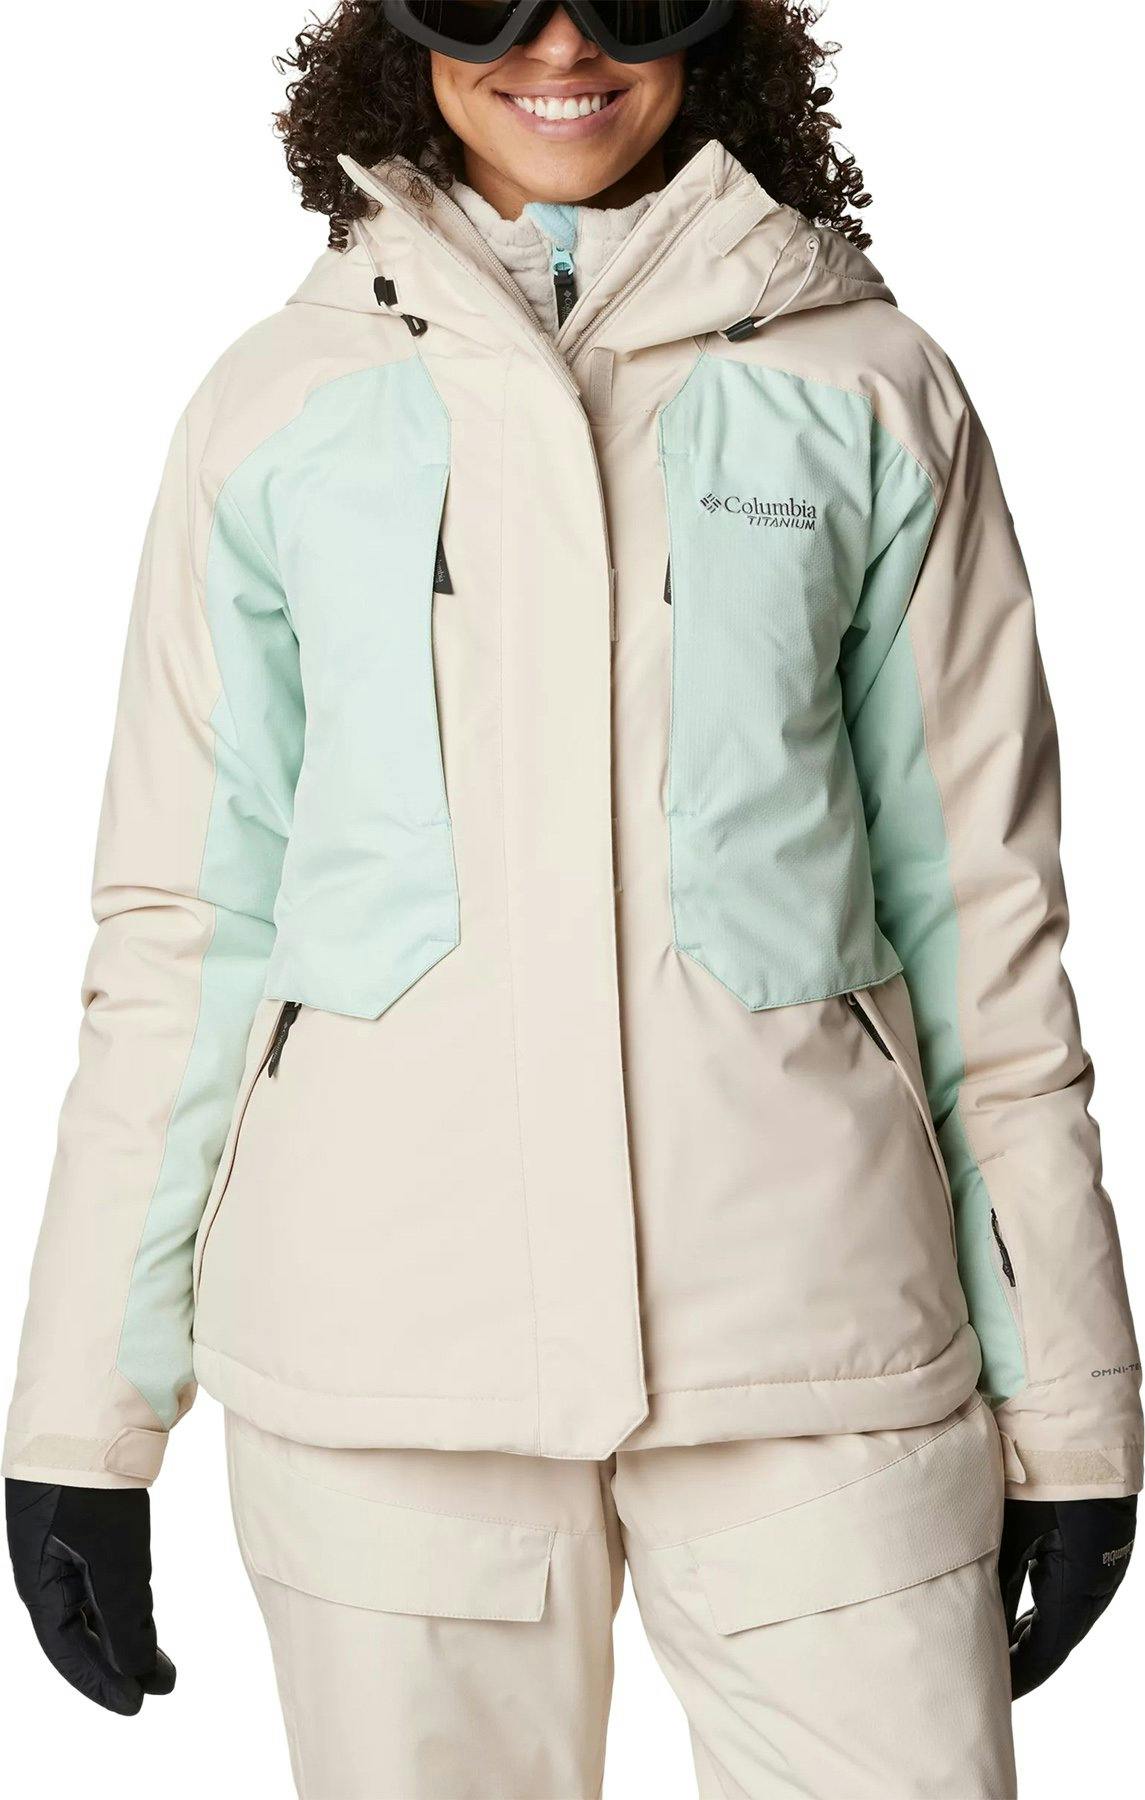 Product image for Highland Summit Jacket - Women's